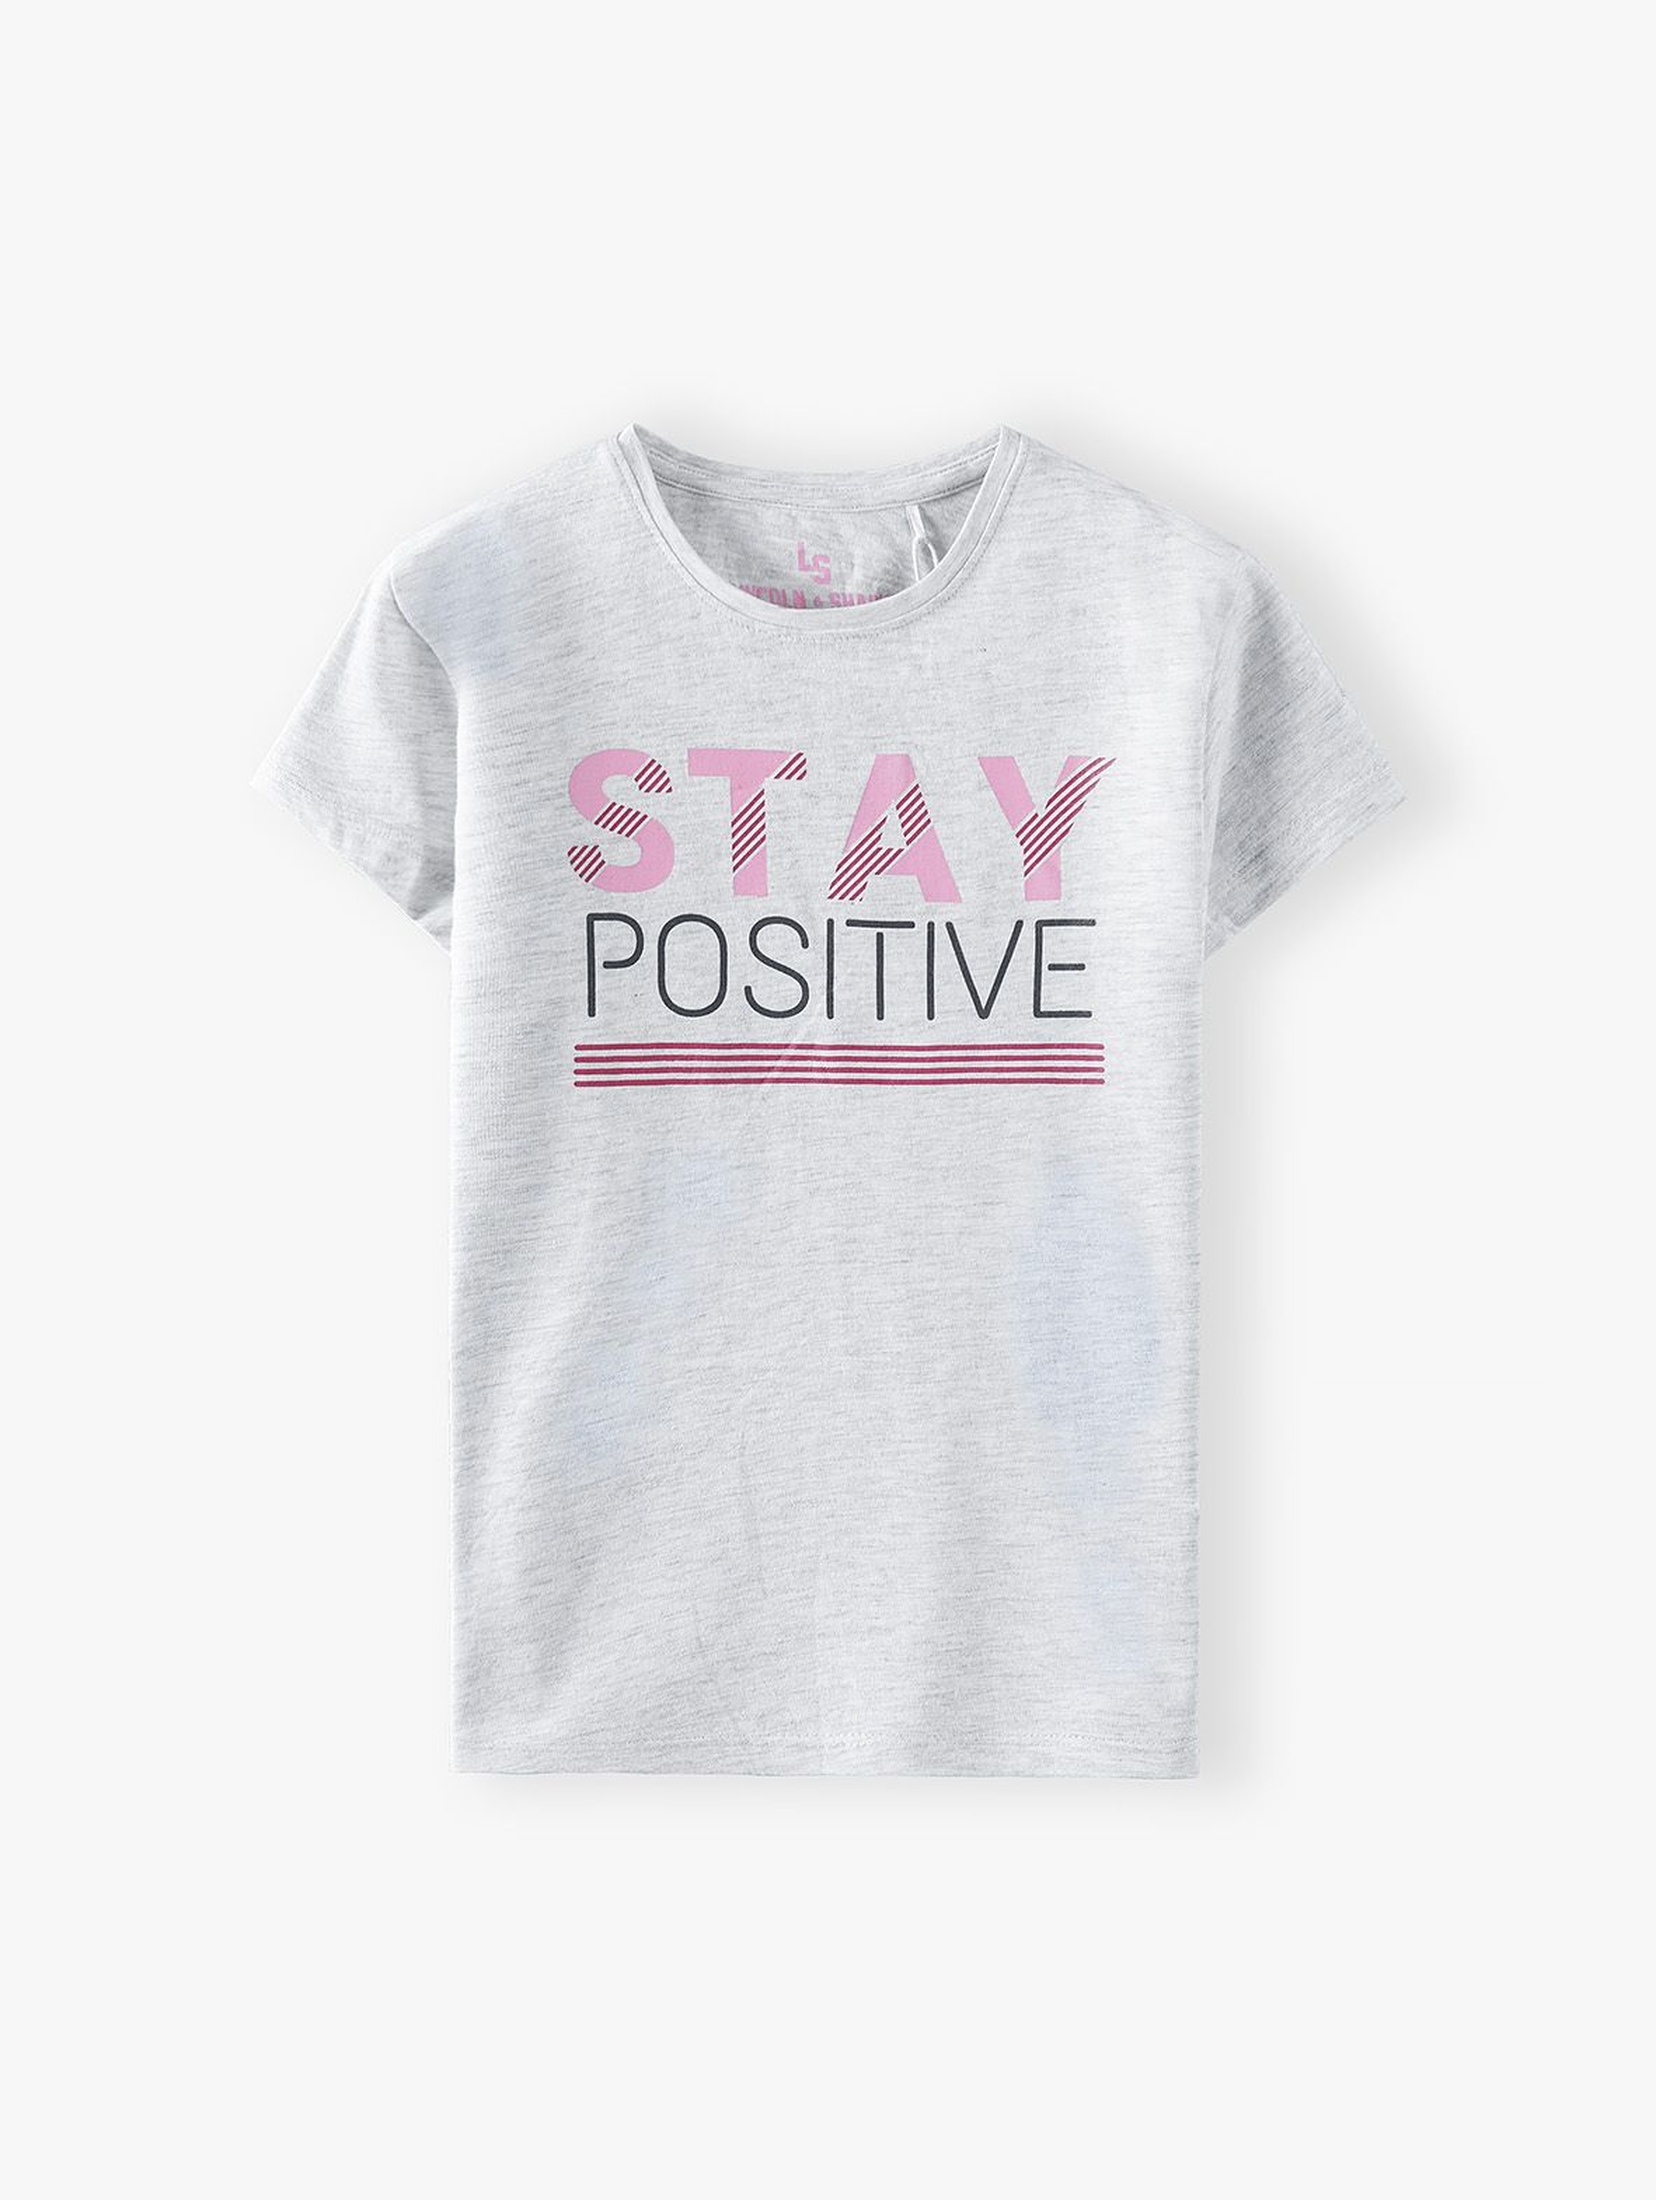 Beżowy t-shirt dziewczęcy z napisem Stay Positive